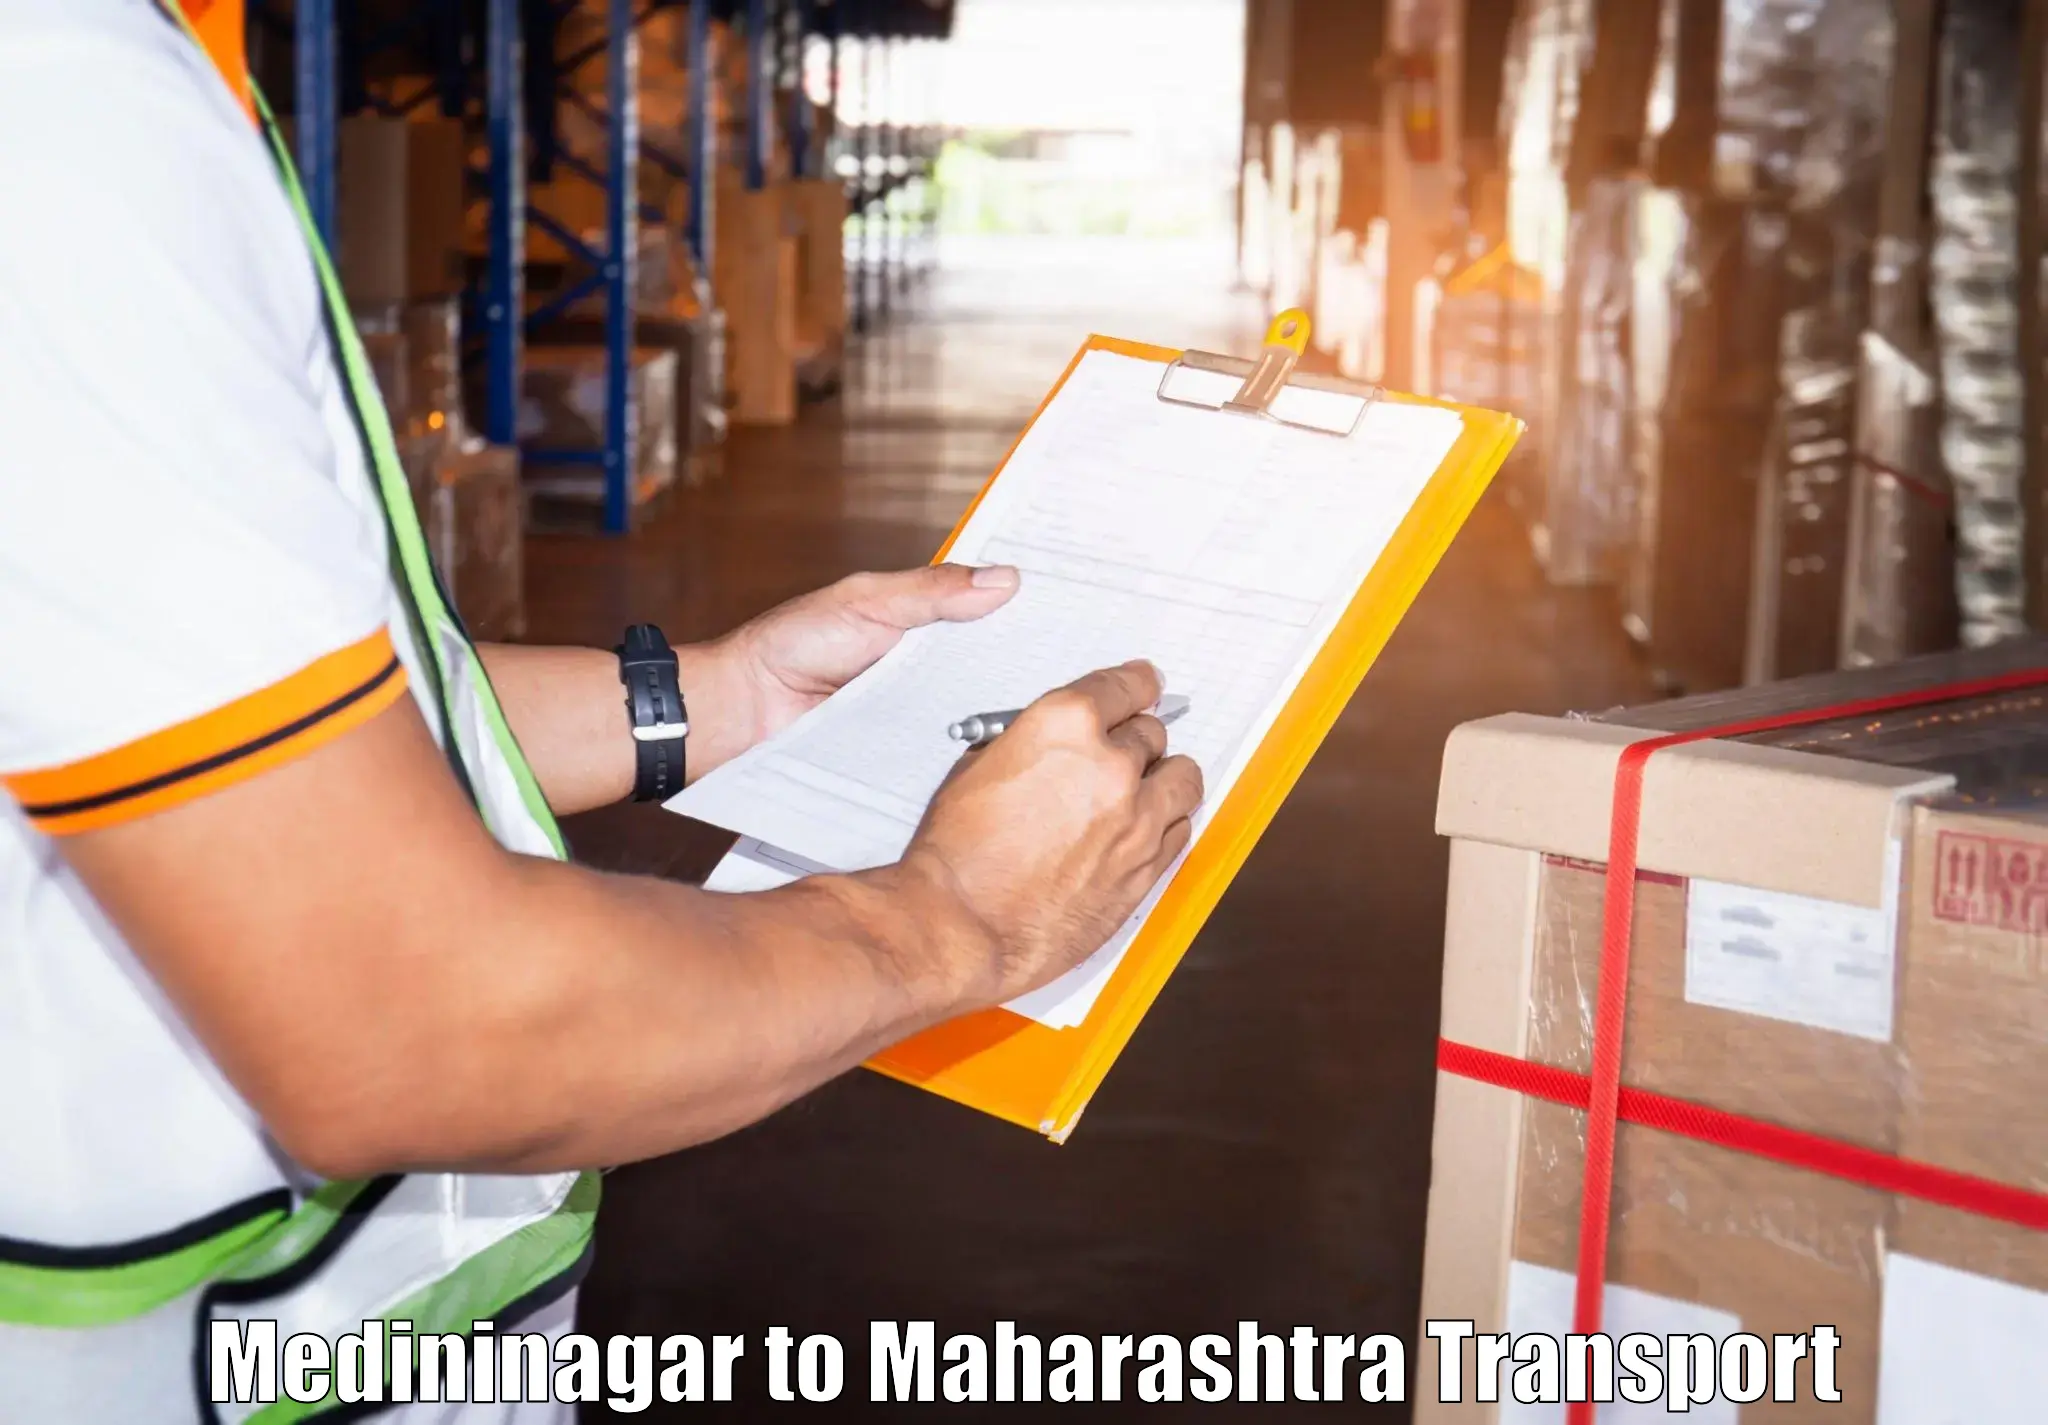 Truck transport companies in India Medininagar to Ojhar